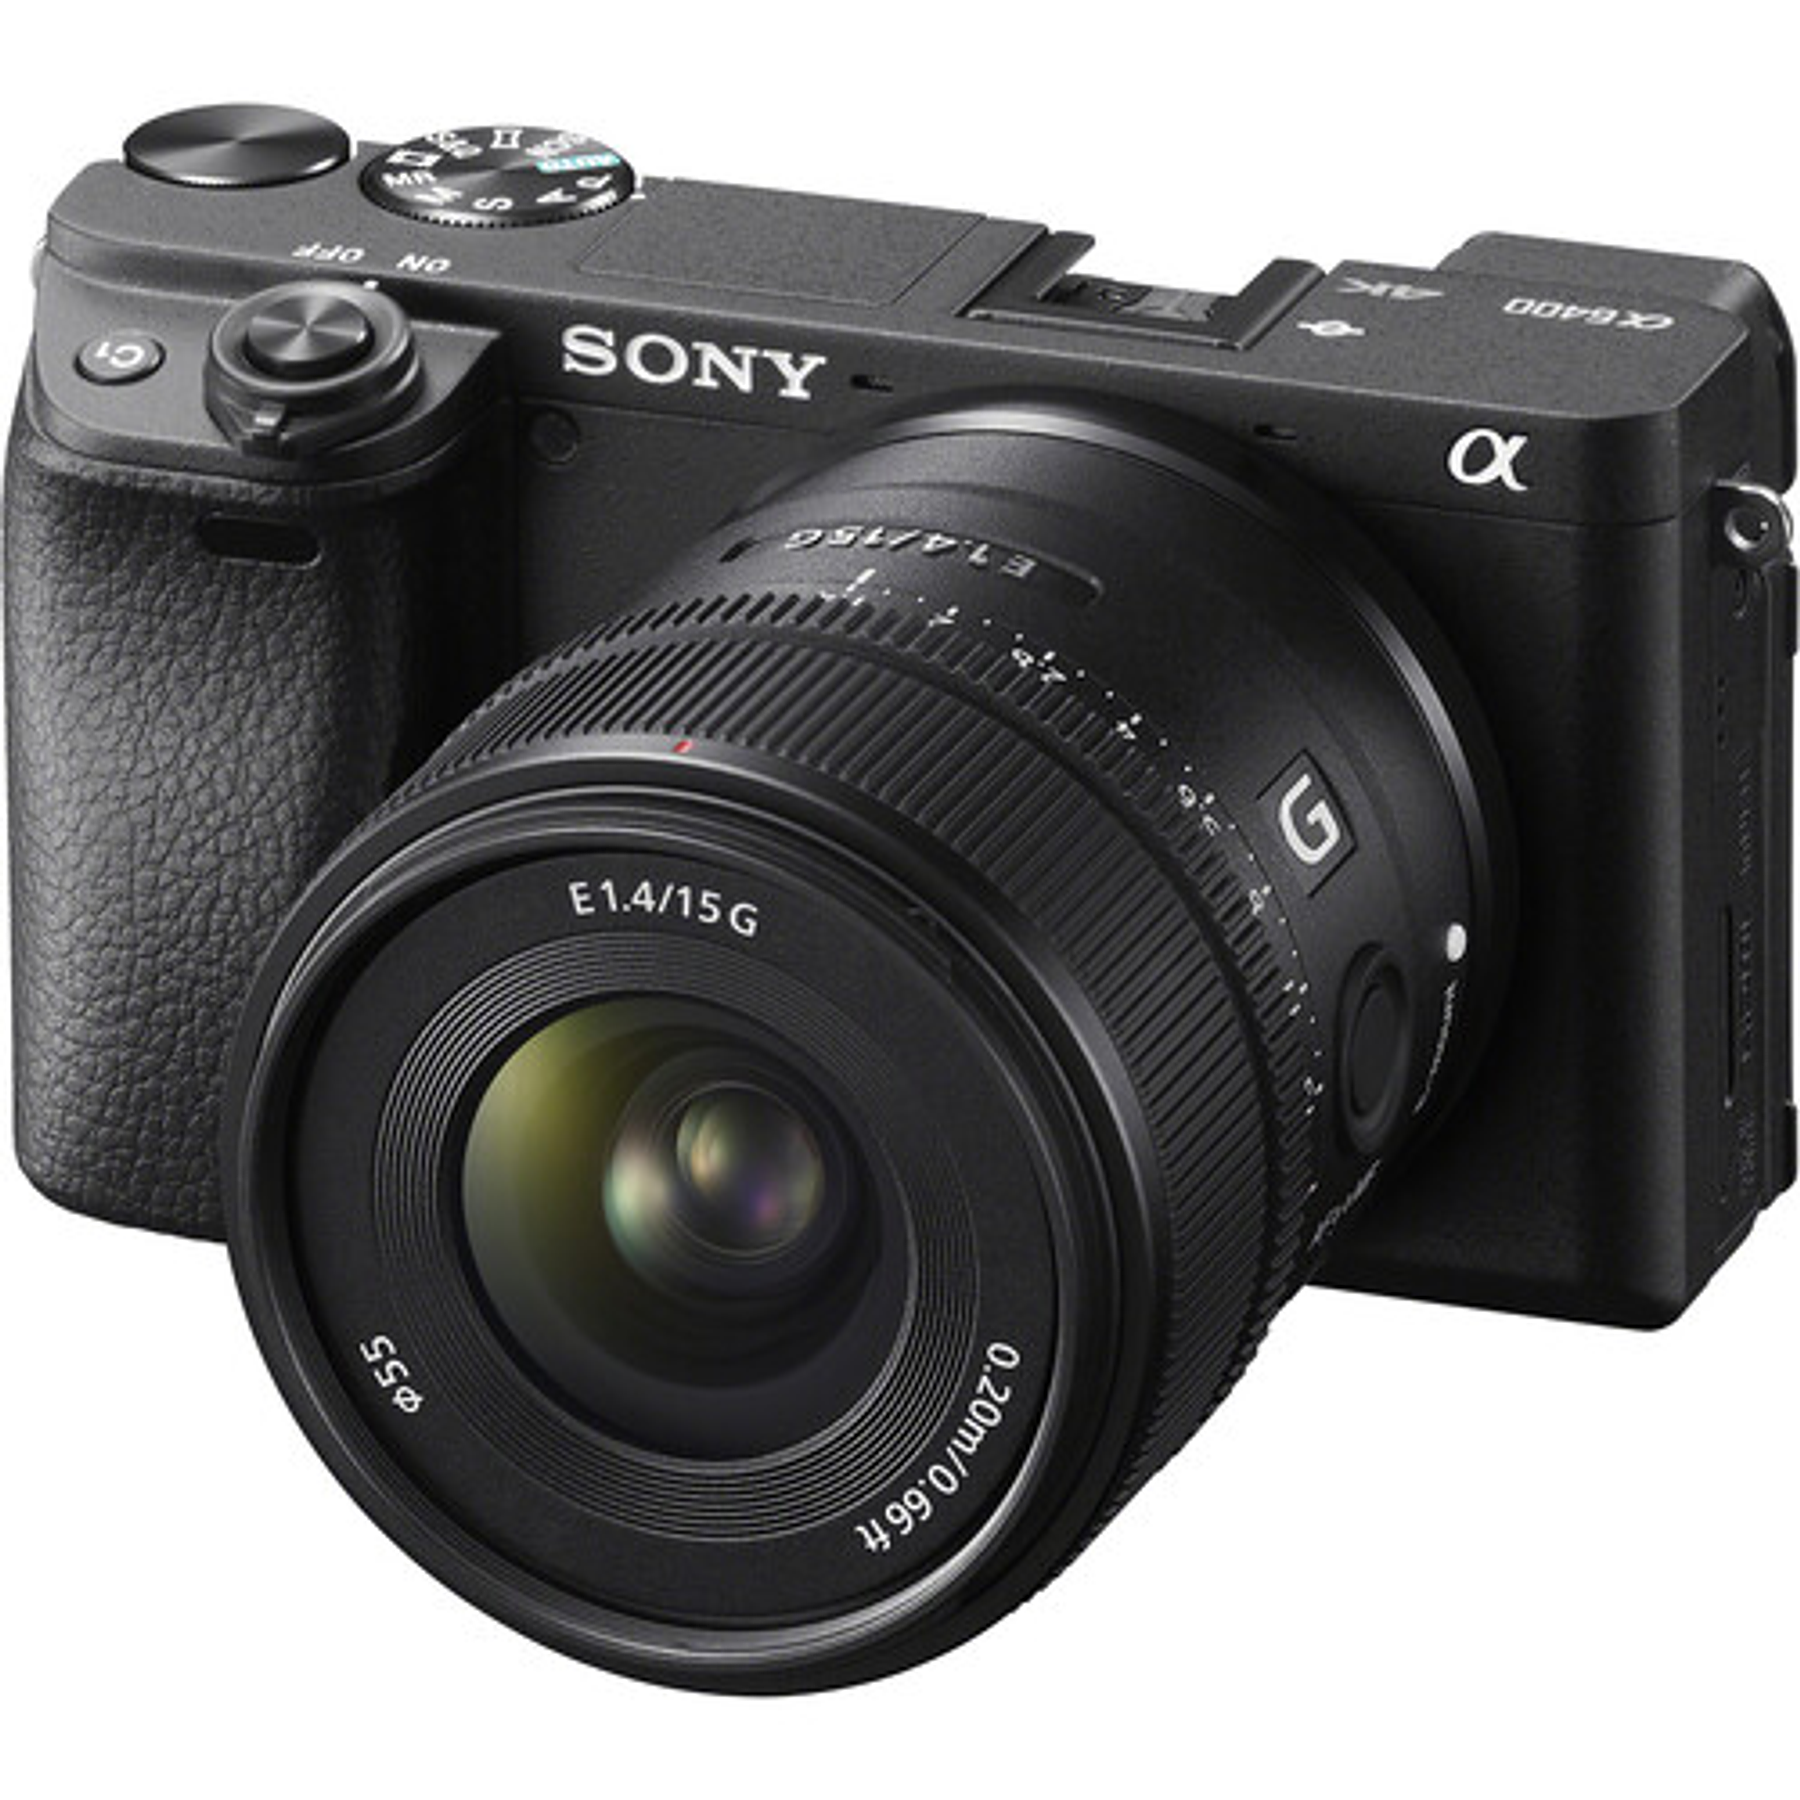 Lente Sony E 15mm f/1.4 G